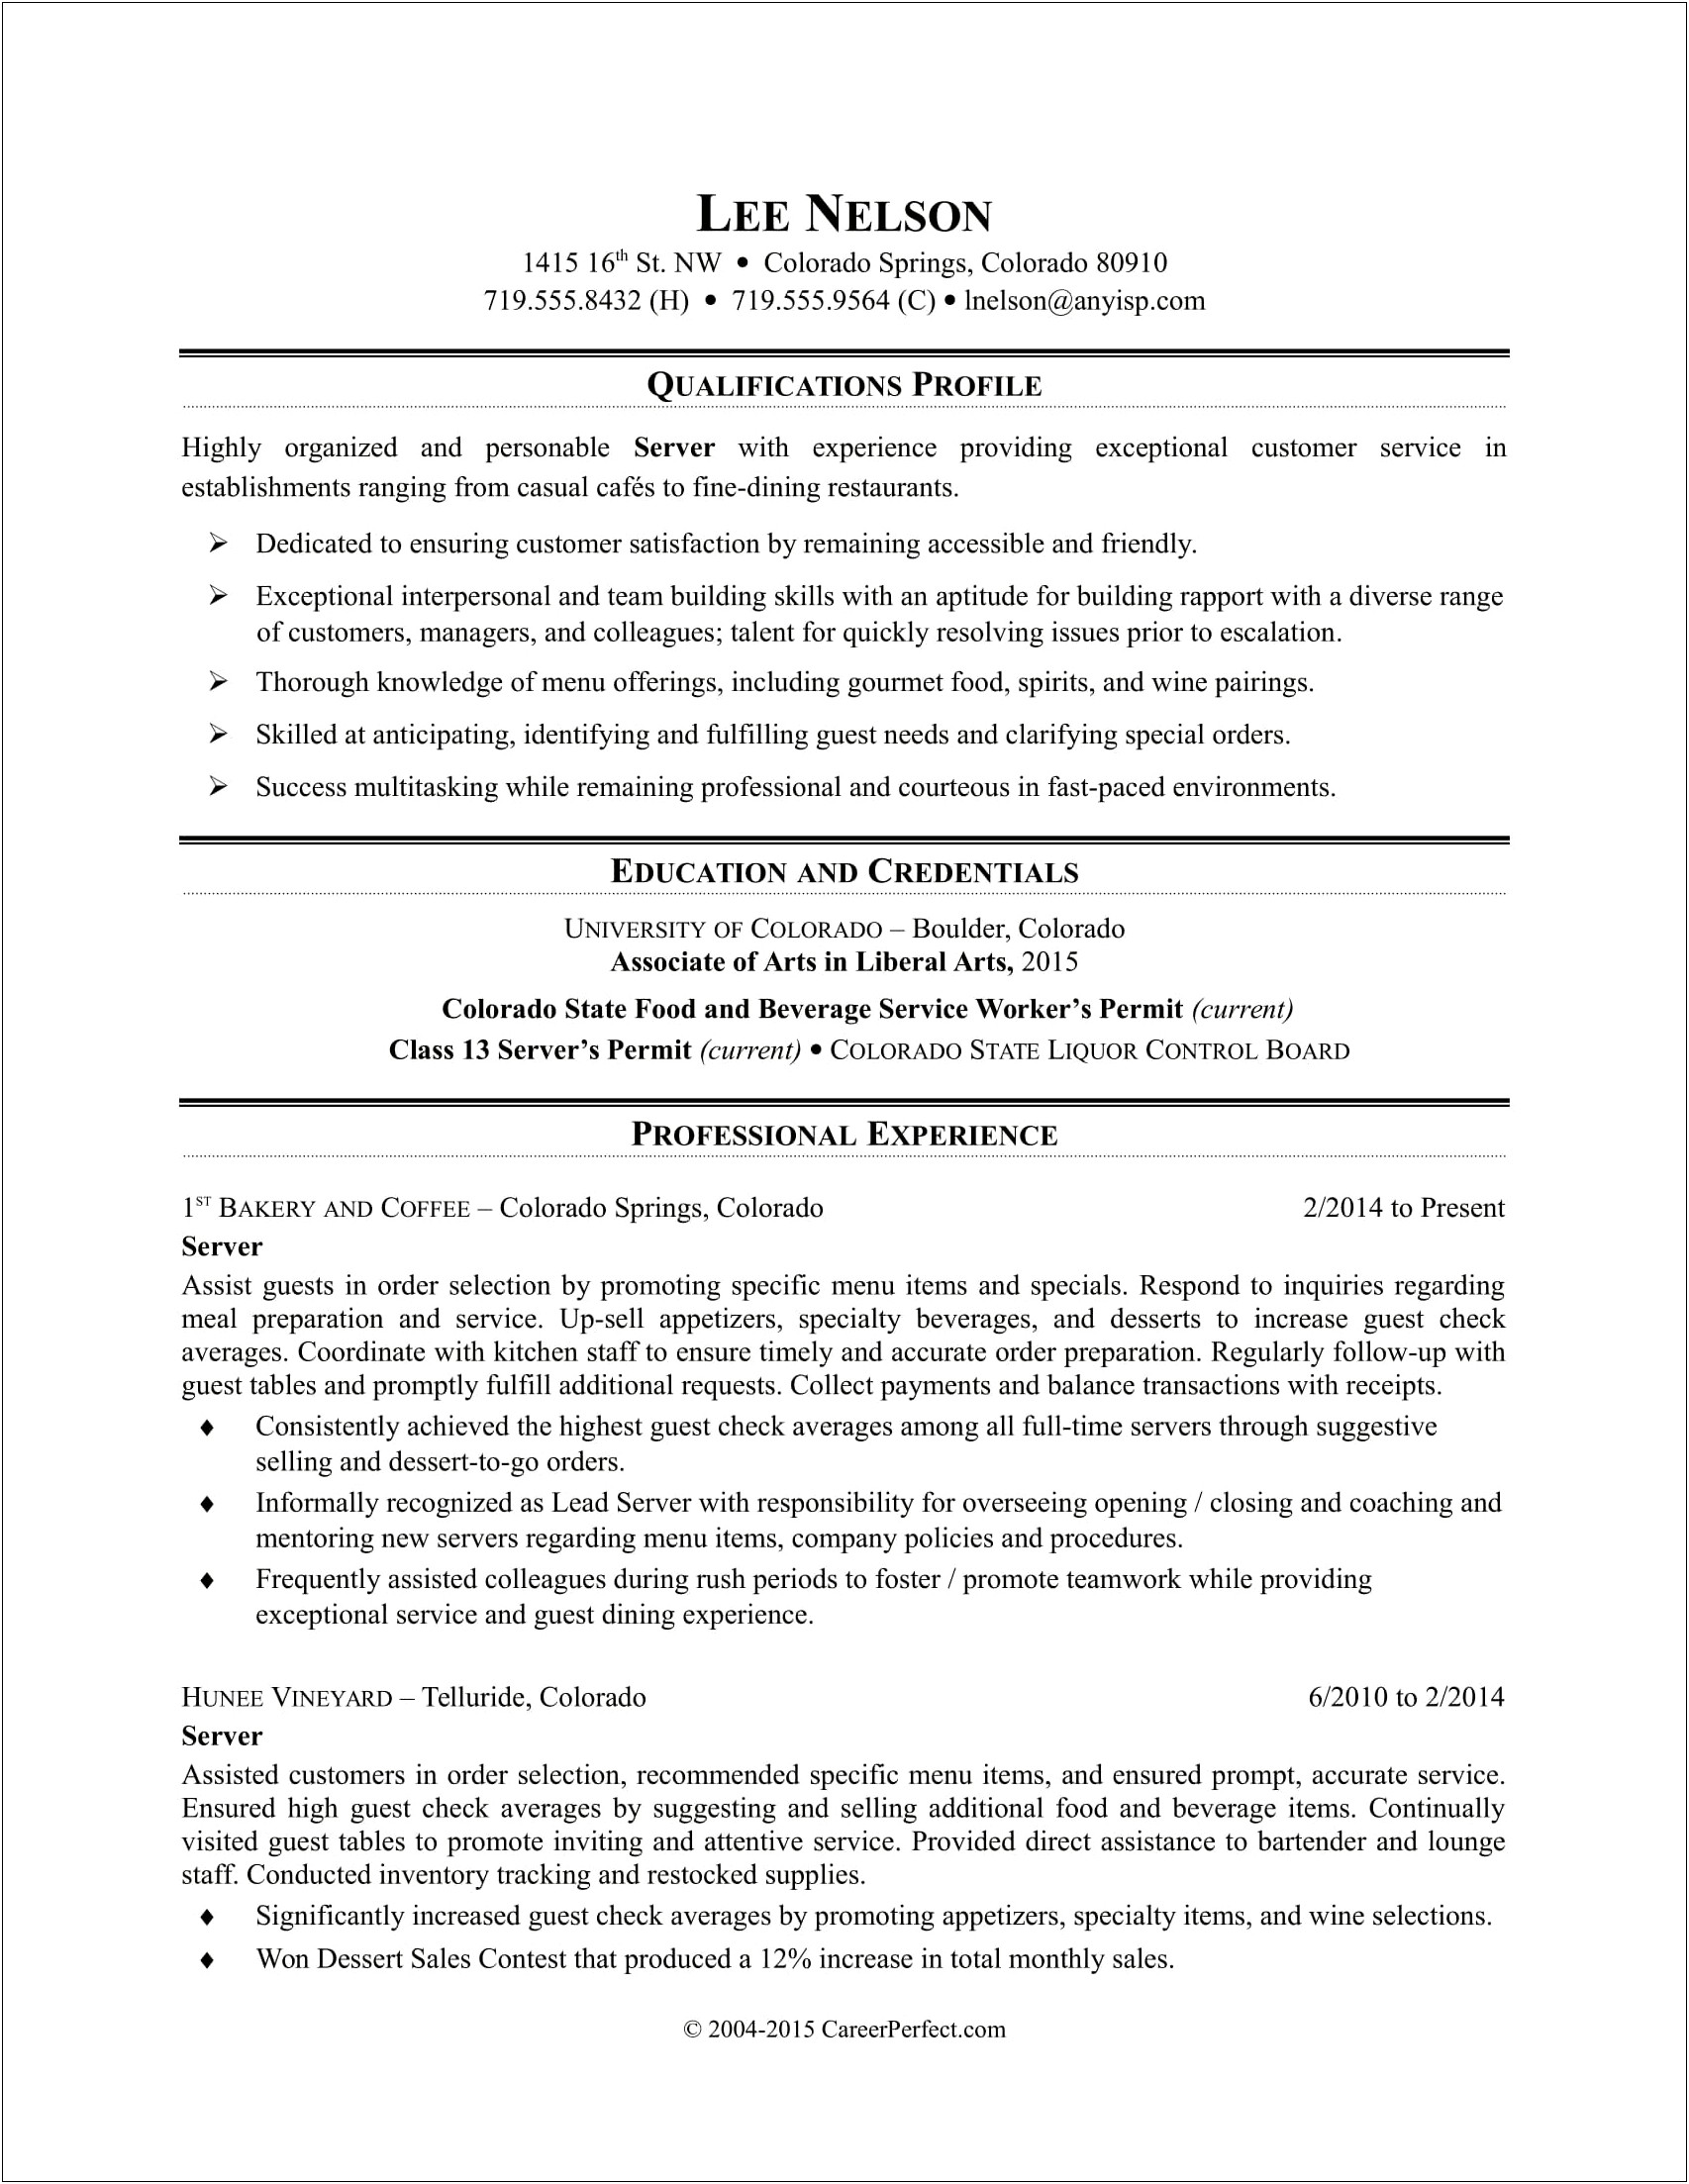 Job Description For Current Job Resume